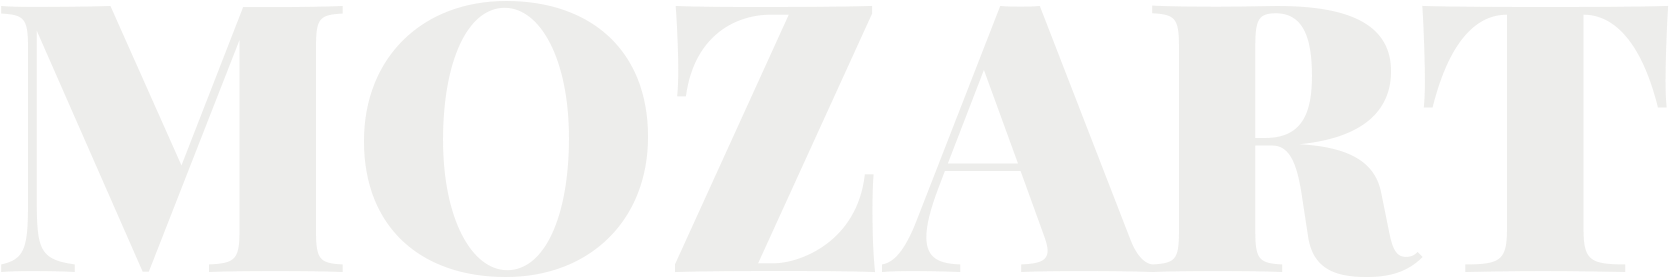 Mozart Logo Design PNG image